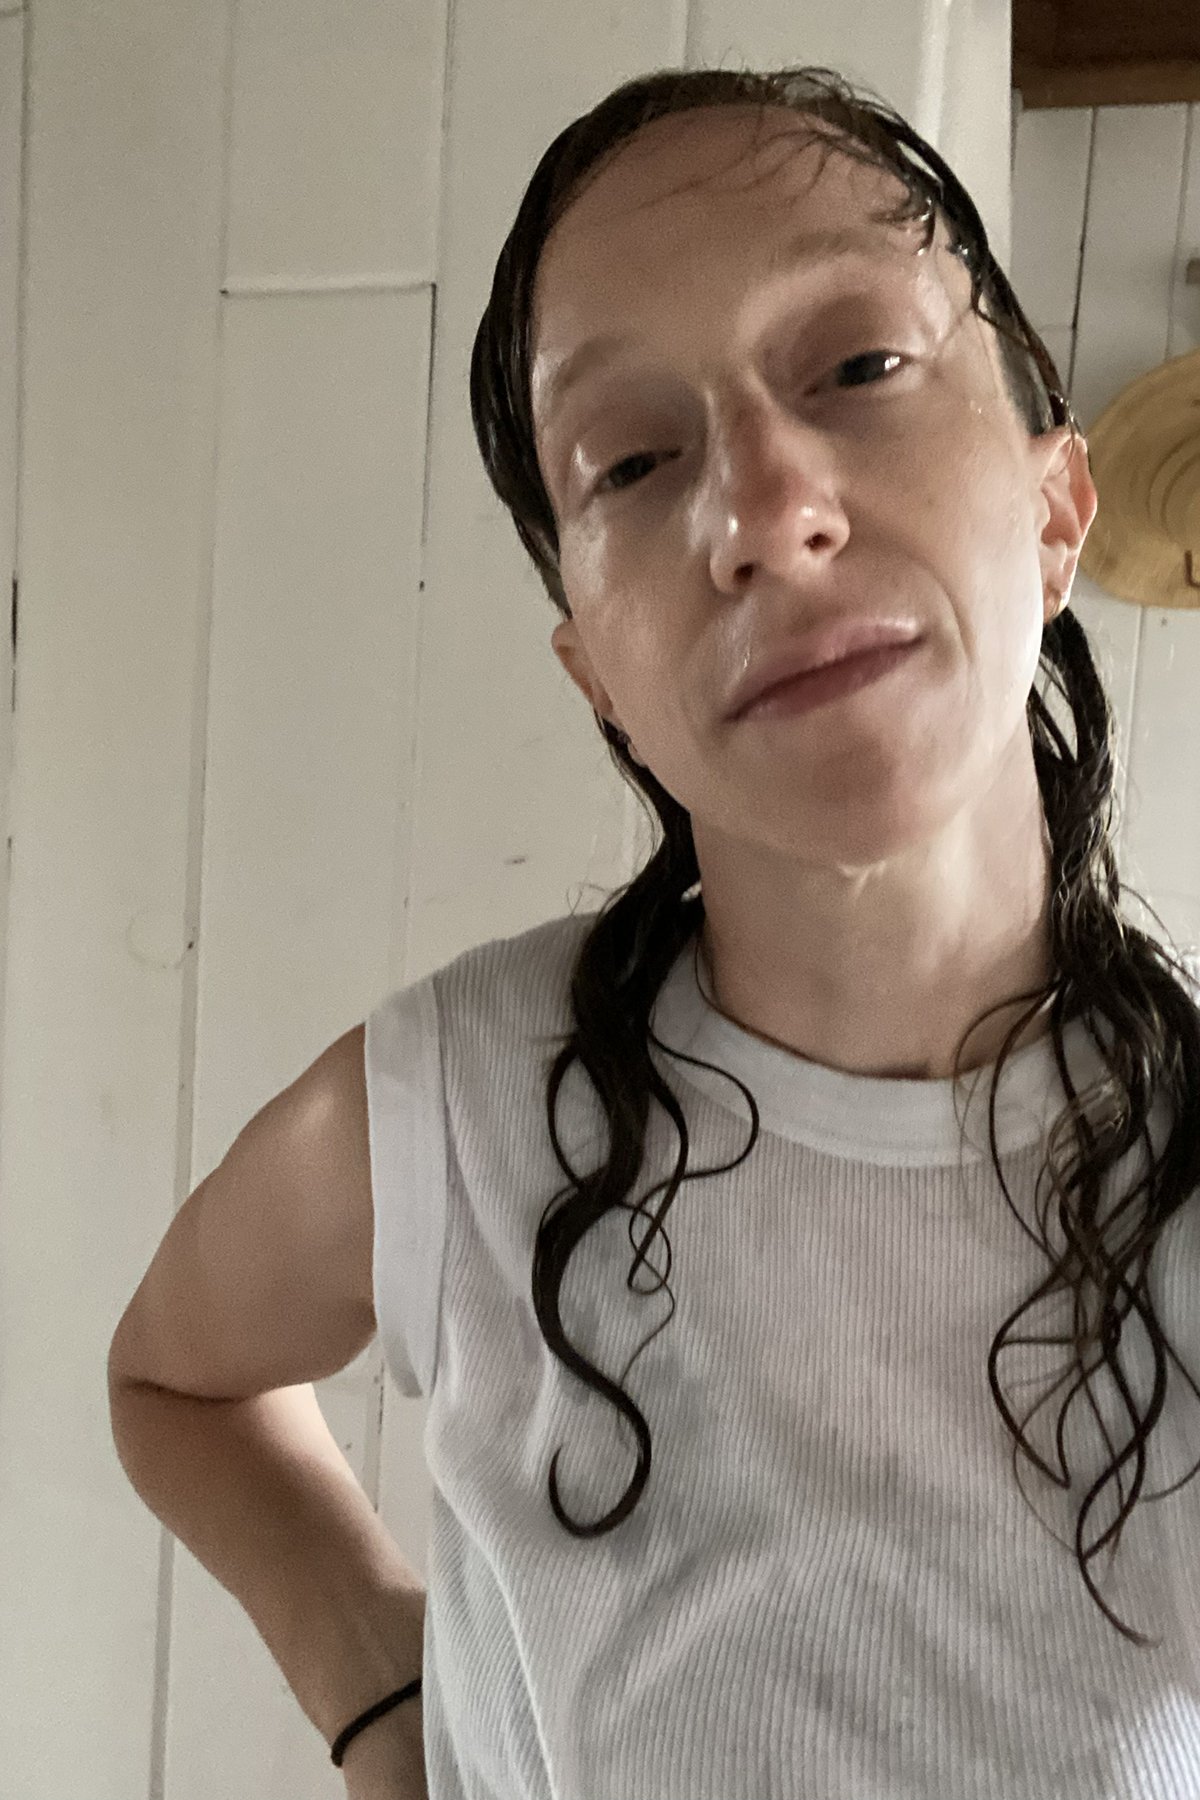  Un portrait photo montrant l'artiste, Amalle Dublon, dans une camisole de sport blanche, la peau blanche et moite, de longues ondulations plaquées entourant les côtés rasés de près. 